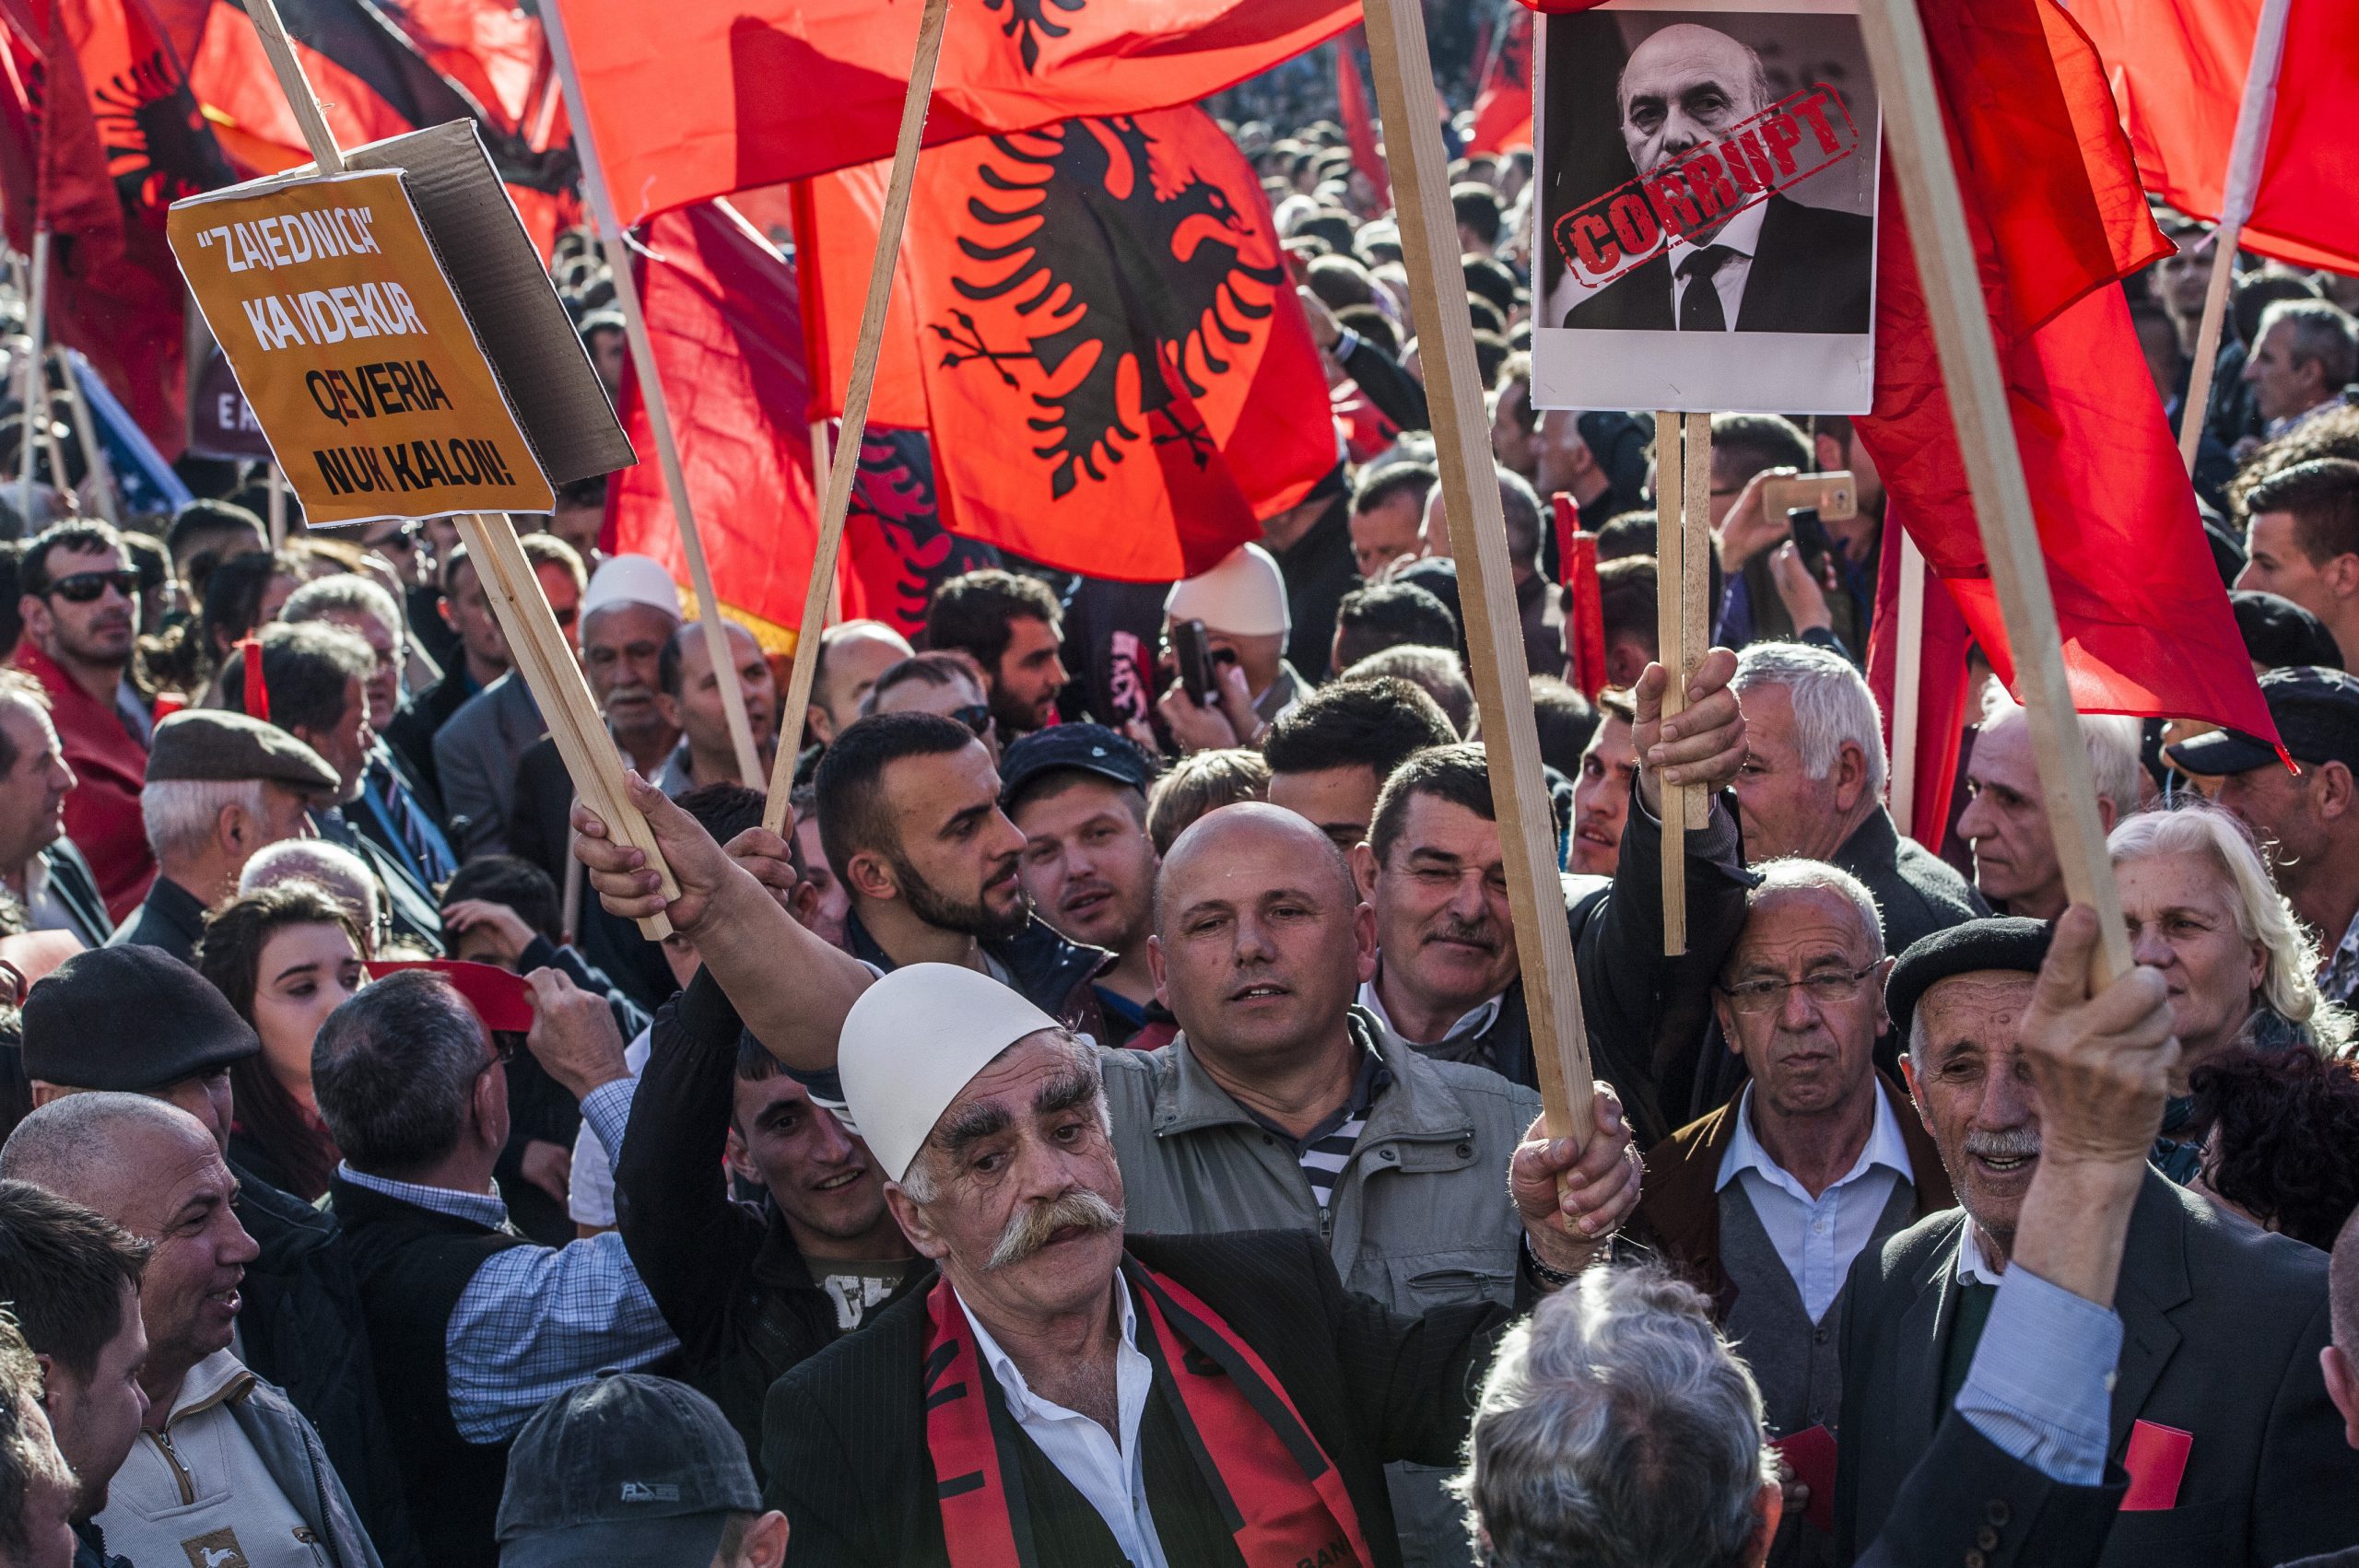 Σέρβος πρόεδρος: Το πραγματικό σχέδιο των Αλβανών είναι η κυριαρχία στα Βαλκάνια